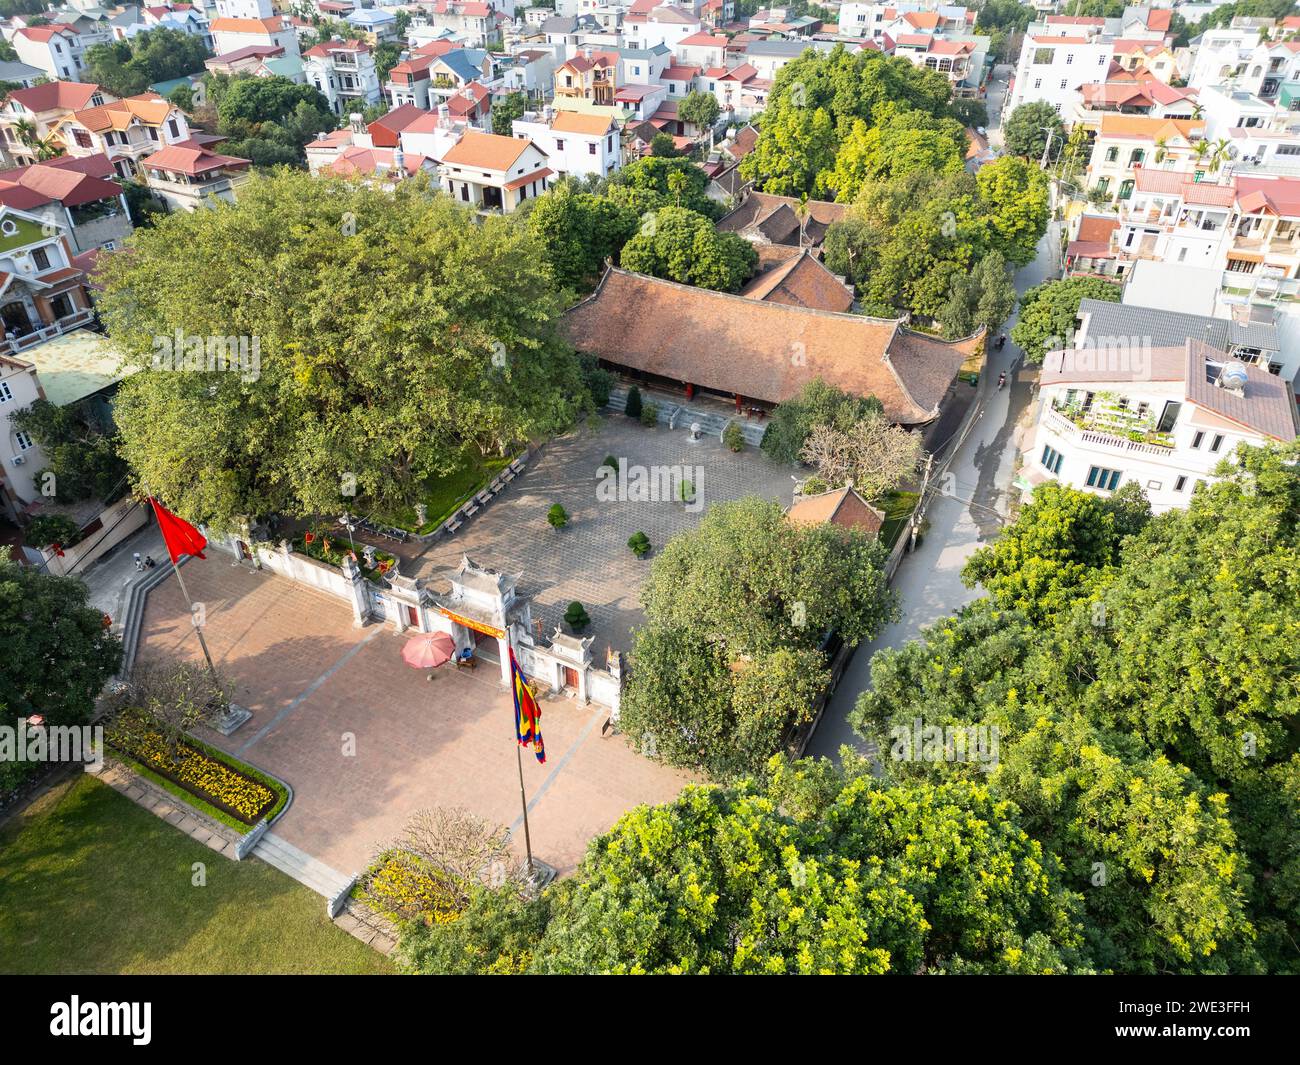 Baoshan Temple, Chùa Bảo Sơn, Co Loa Citadel or Di tích Thành Cổ Loa, Dong Anh, Hanoi, Vietnam Stock Photo